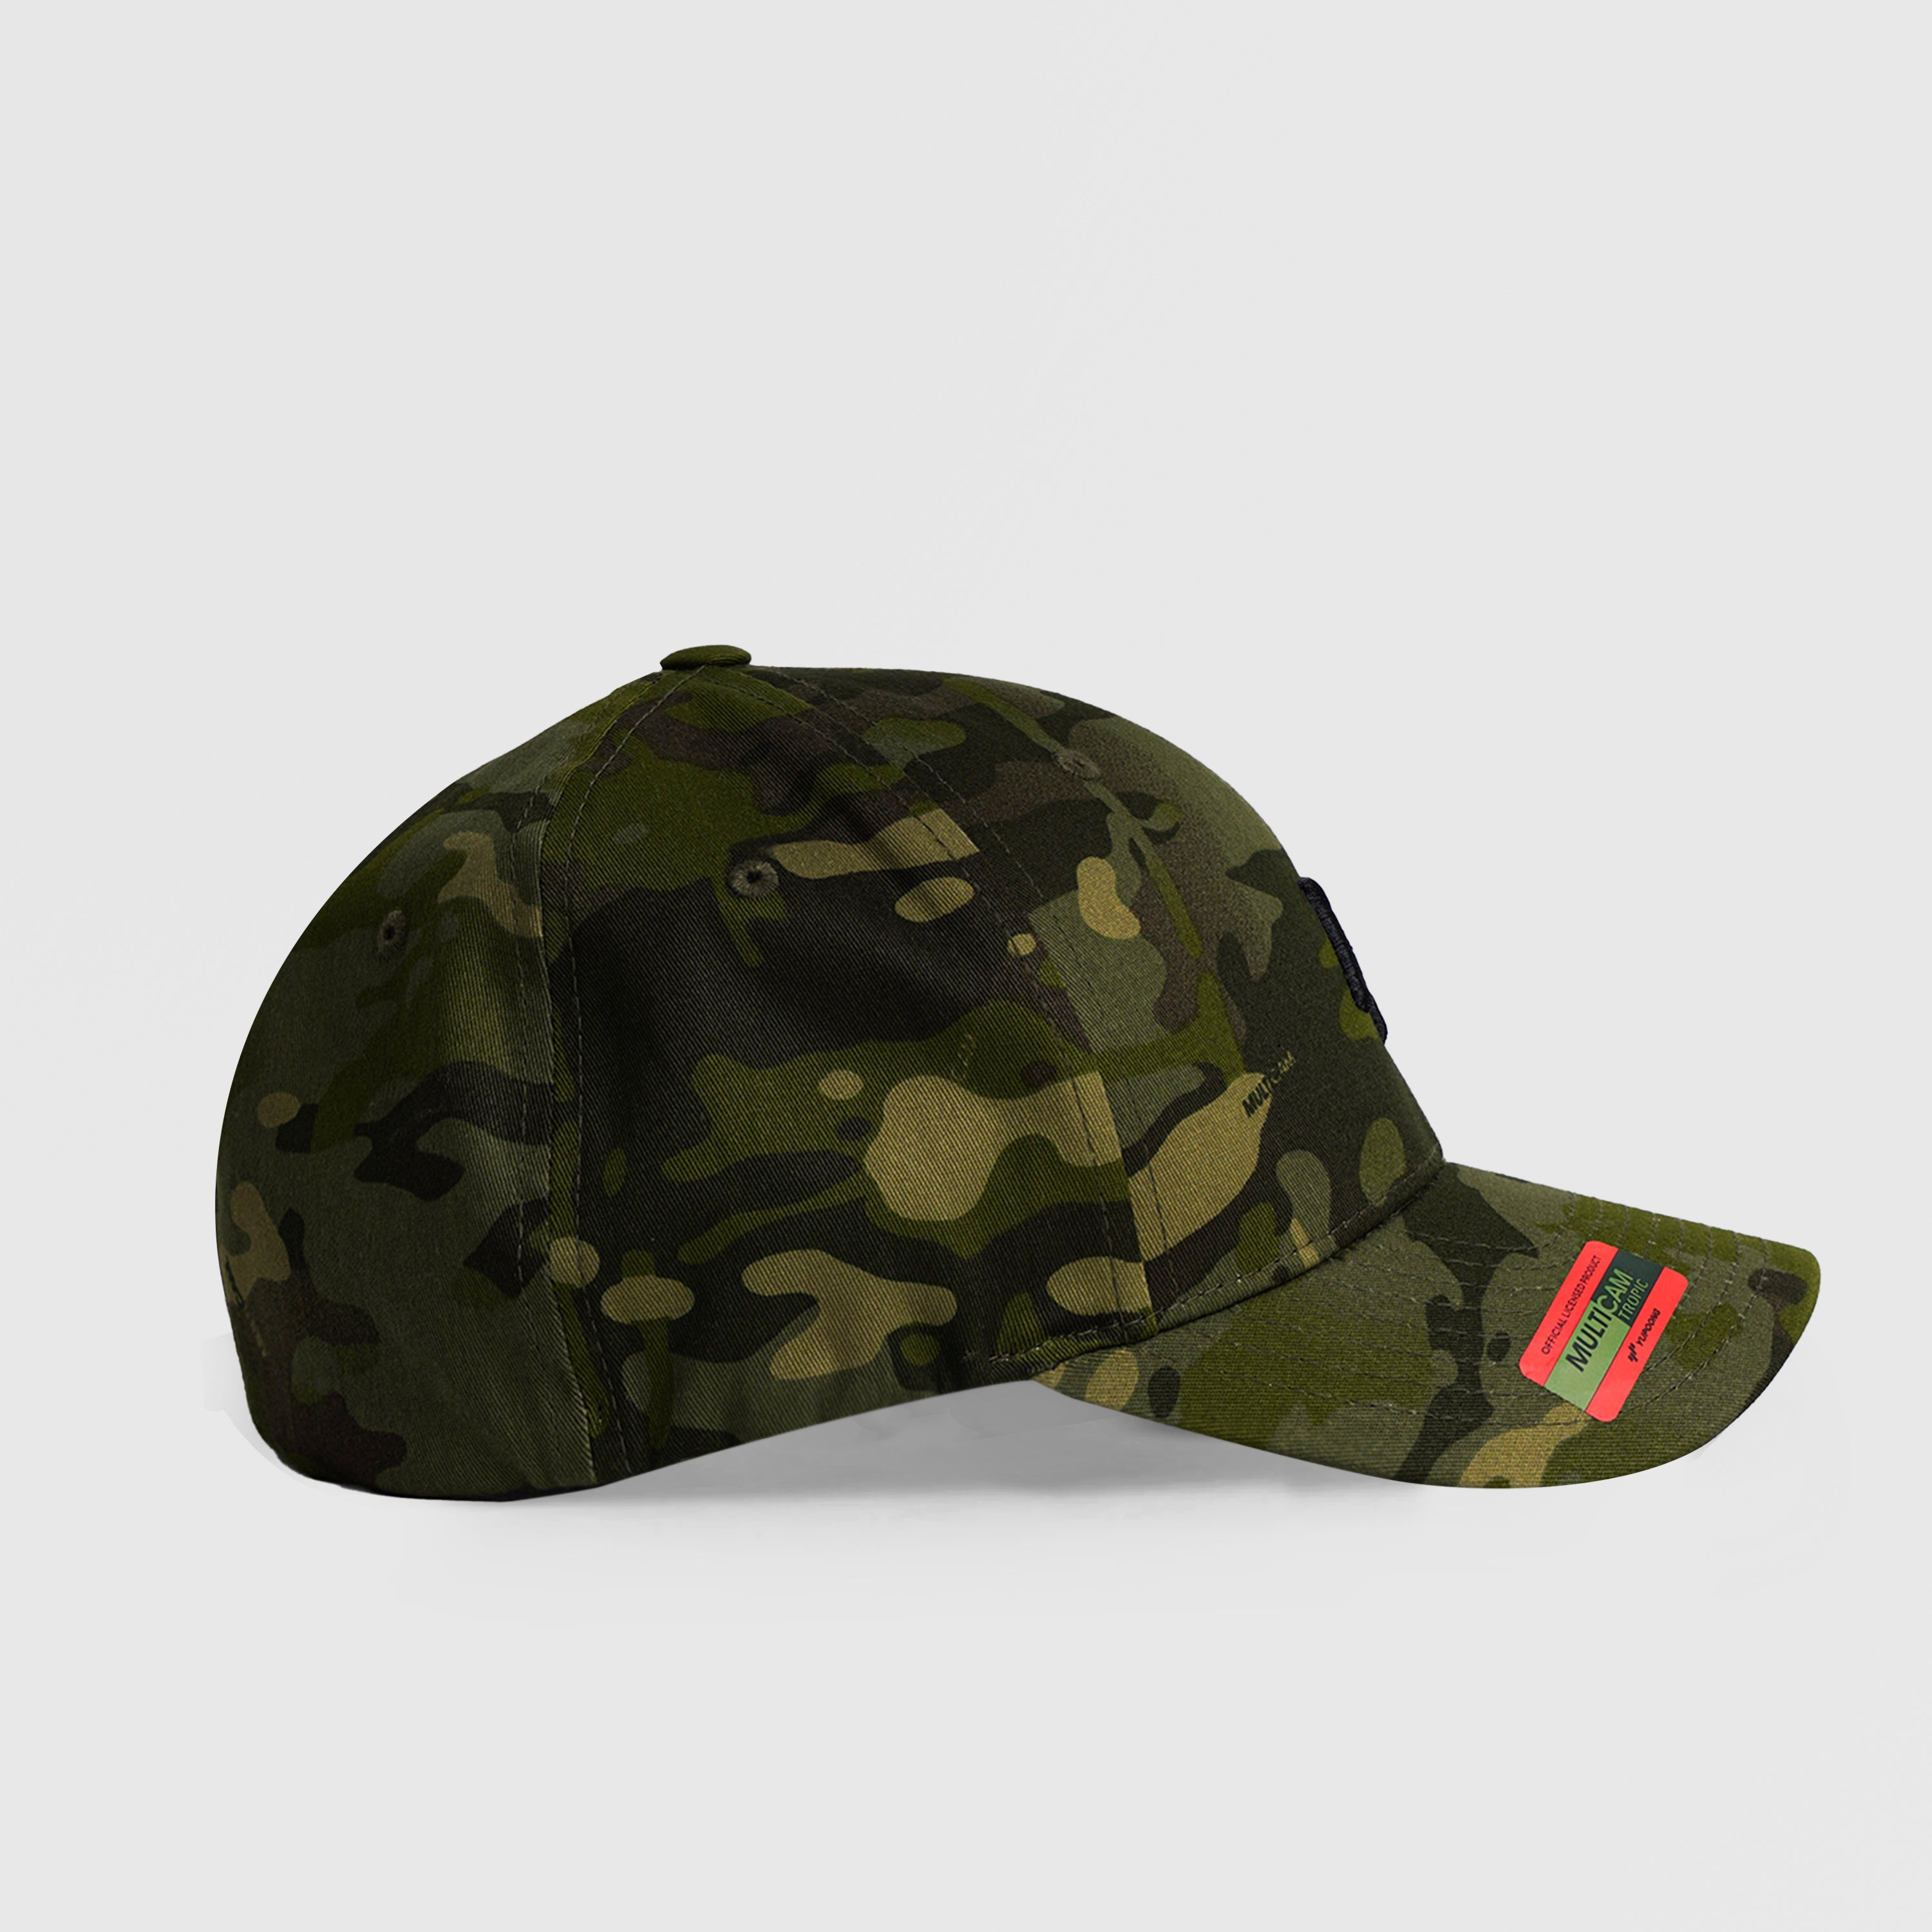 GA Camouflage Baseball Cap (Green)